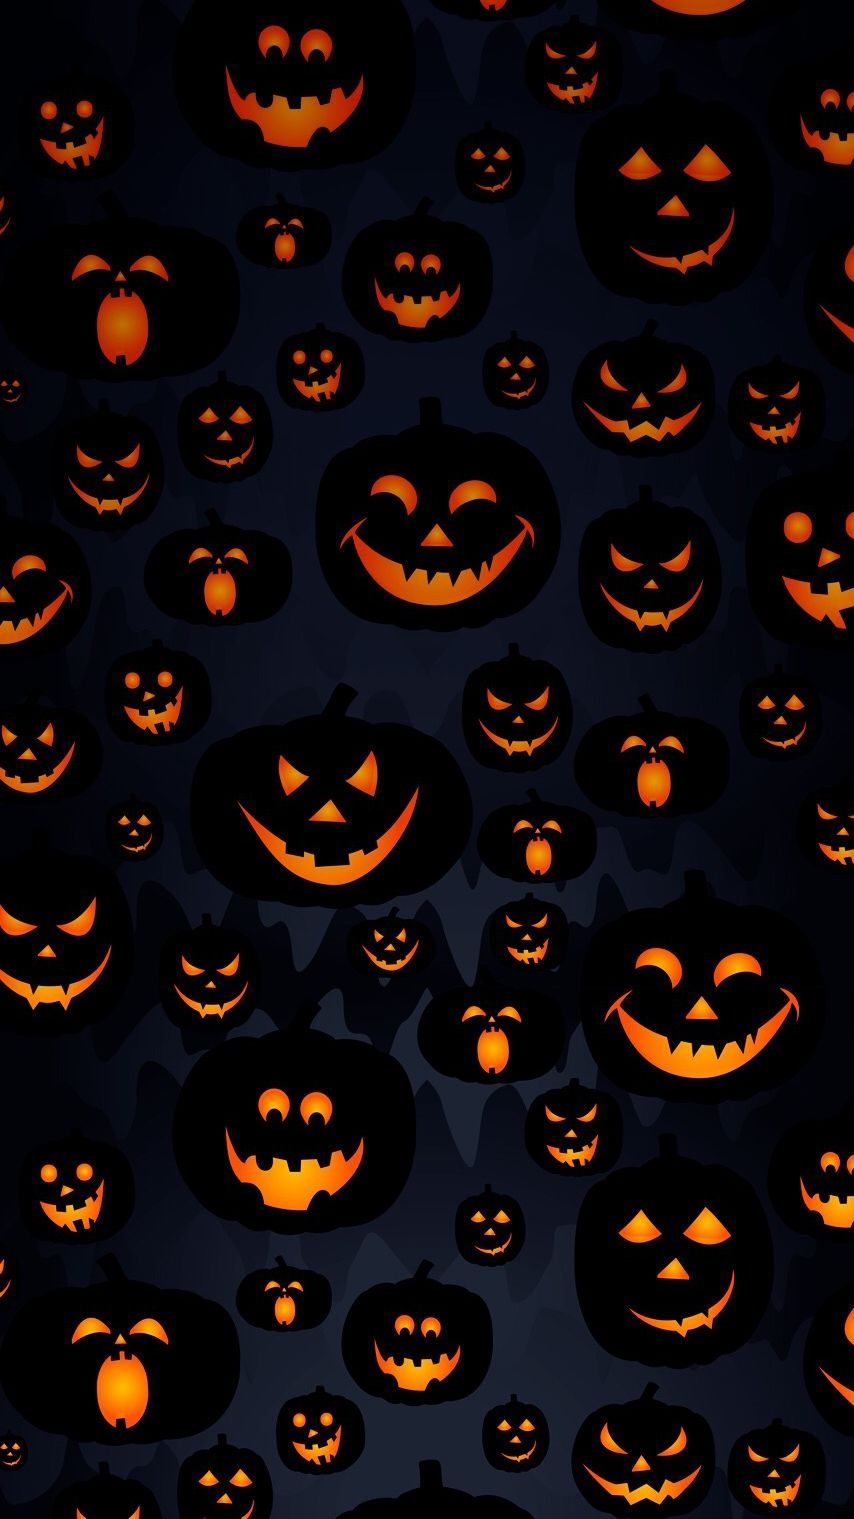 Scary Halloween Pumpkin Masks IPhone Wallpaper. Halloween Wallpaper Iphone, Halloween Wallpaper, Pumpkin Wallpaper